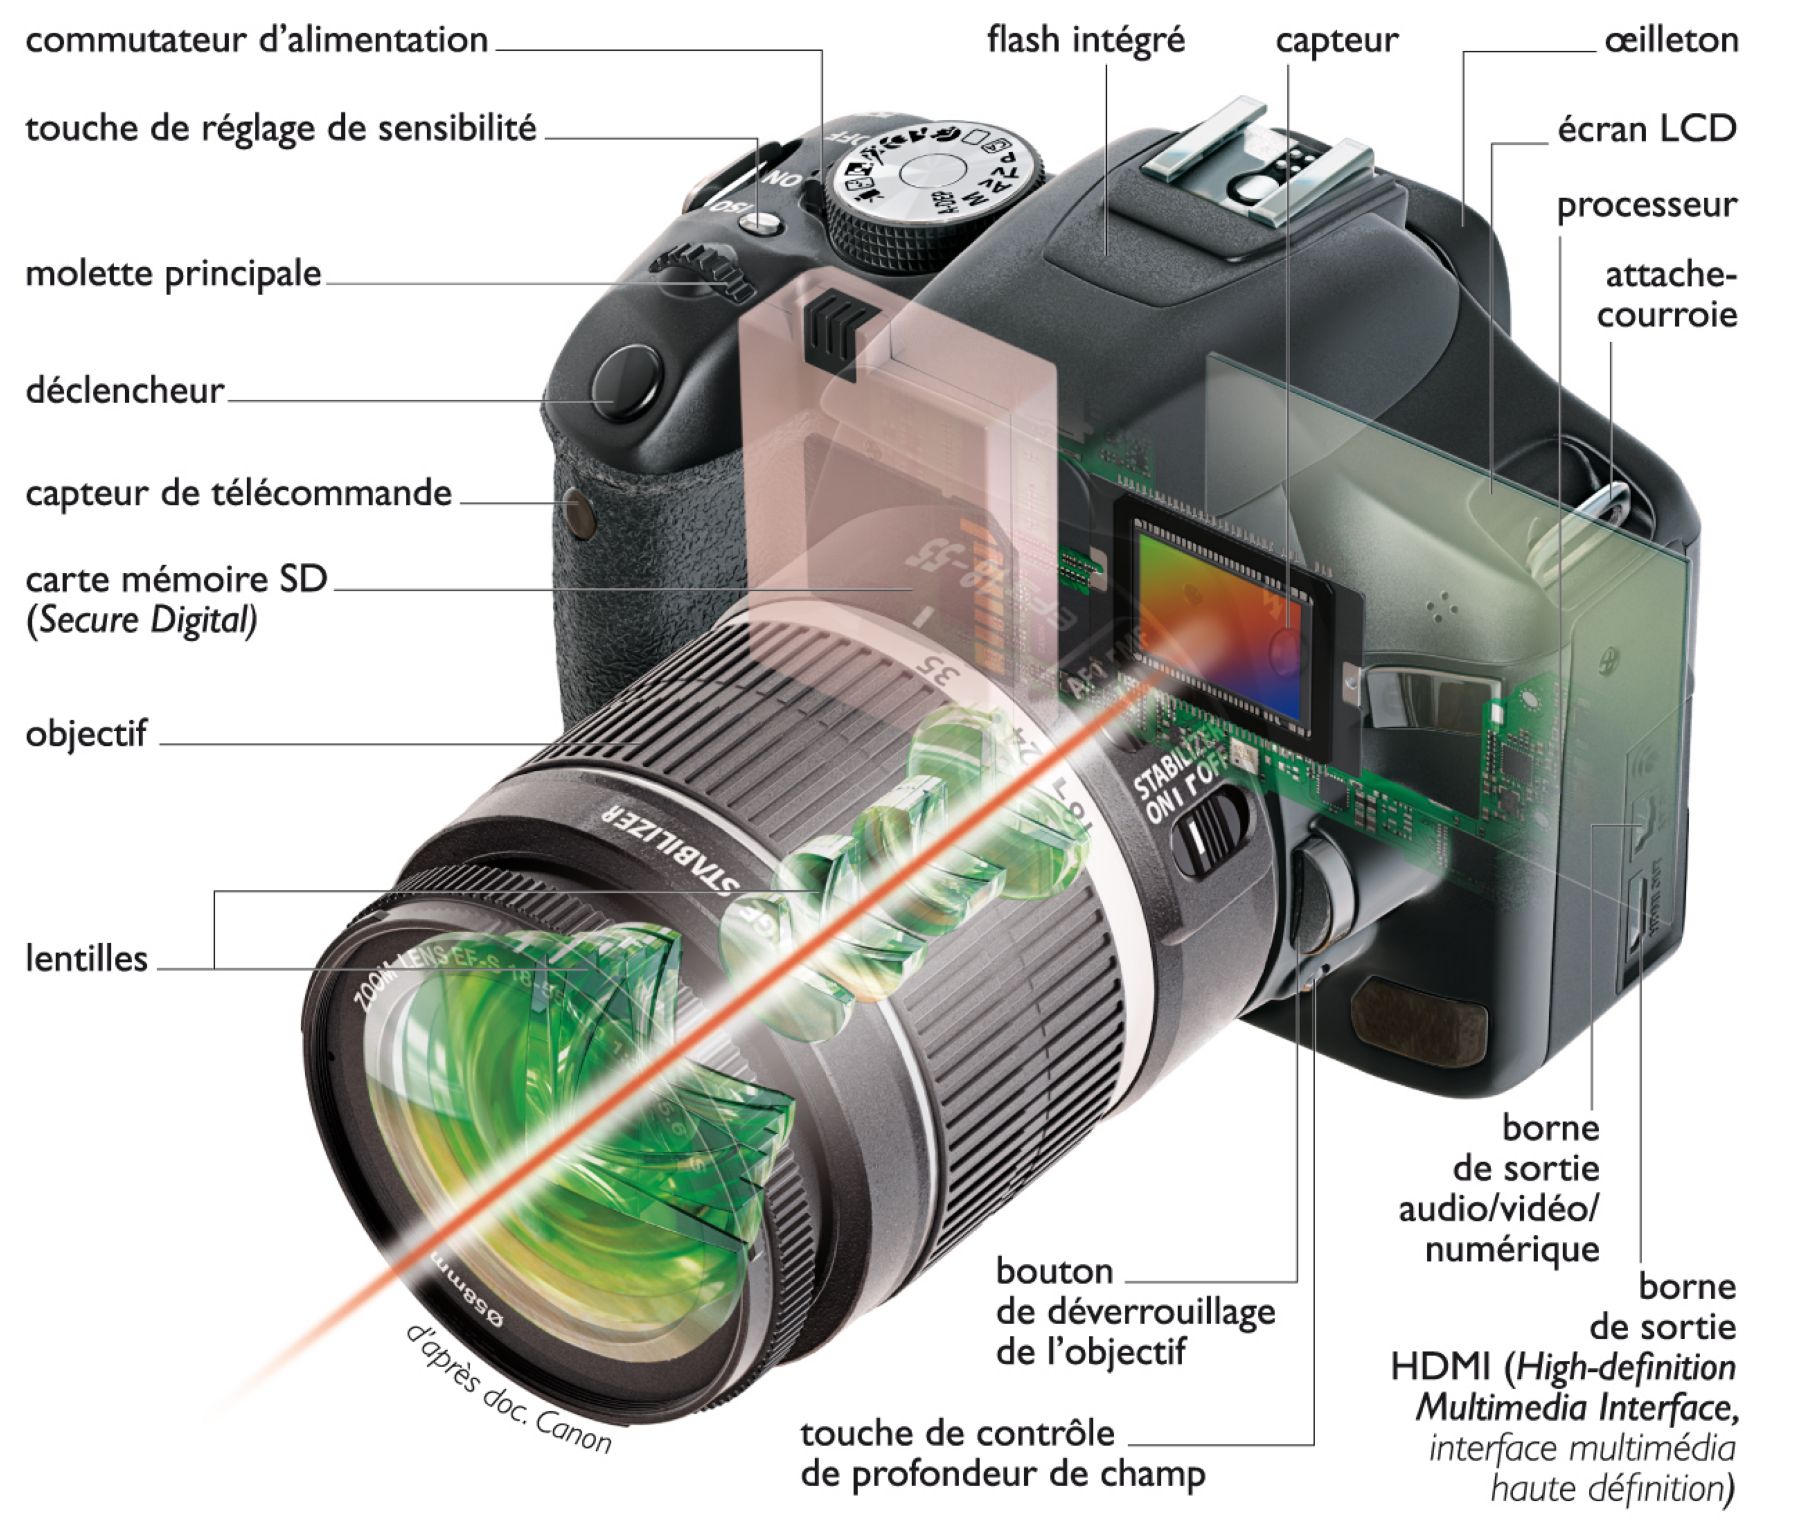 un appareil de photographie reflex numérique